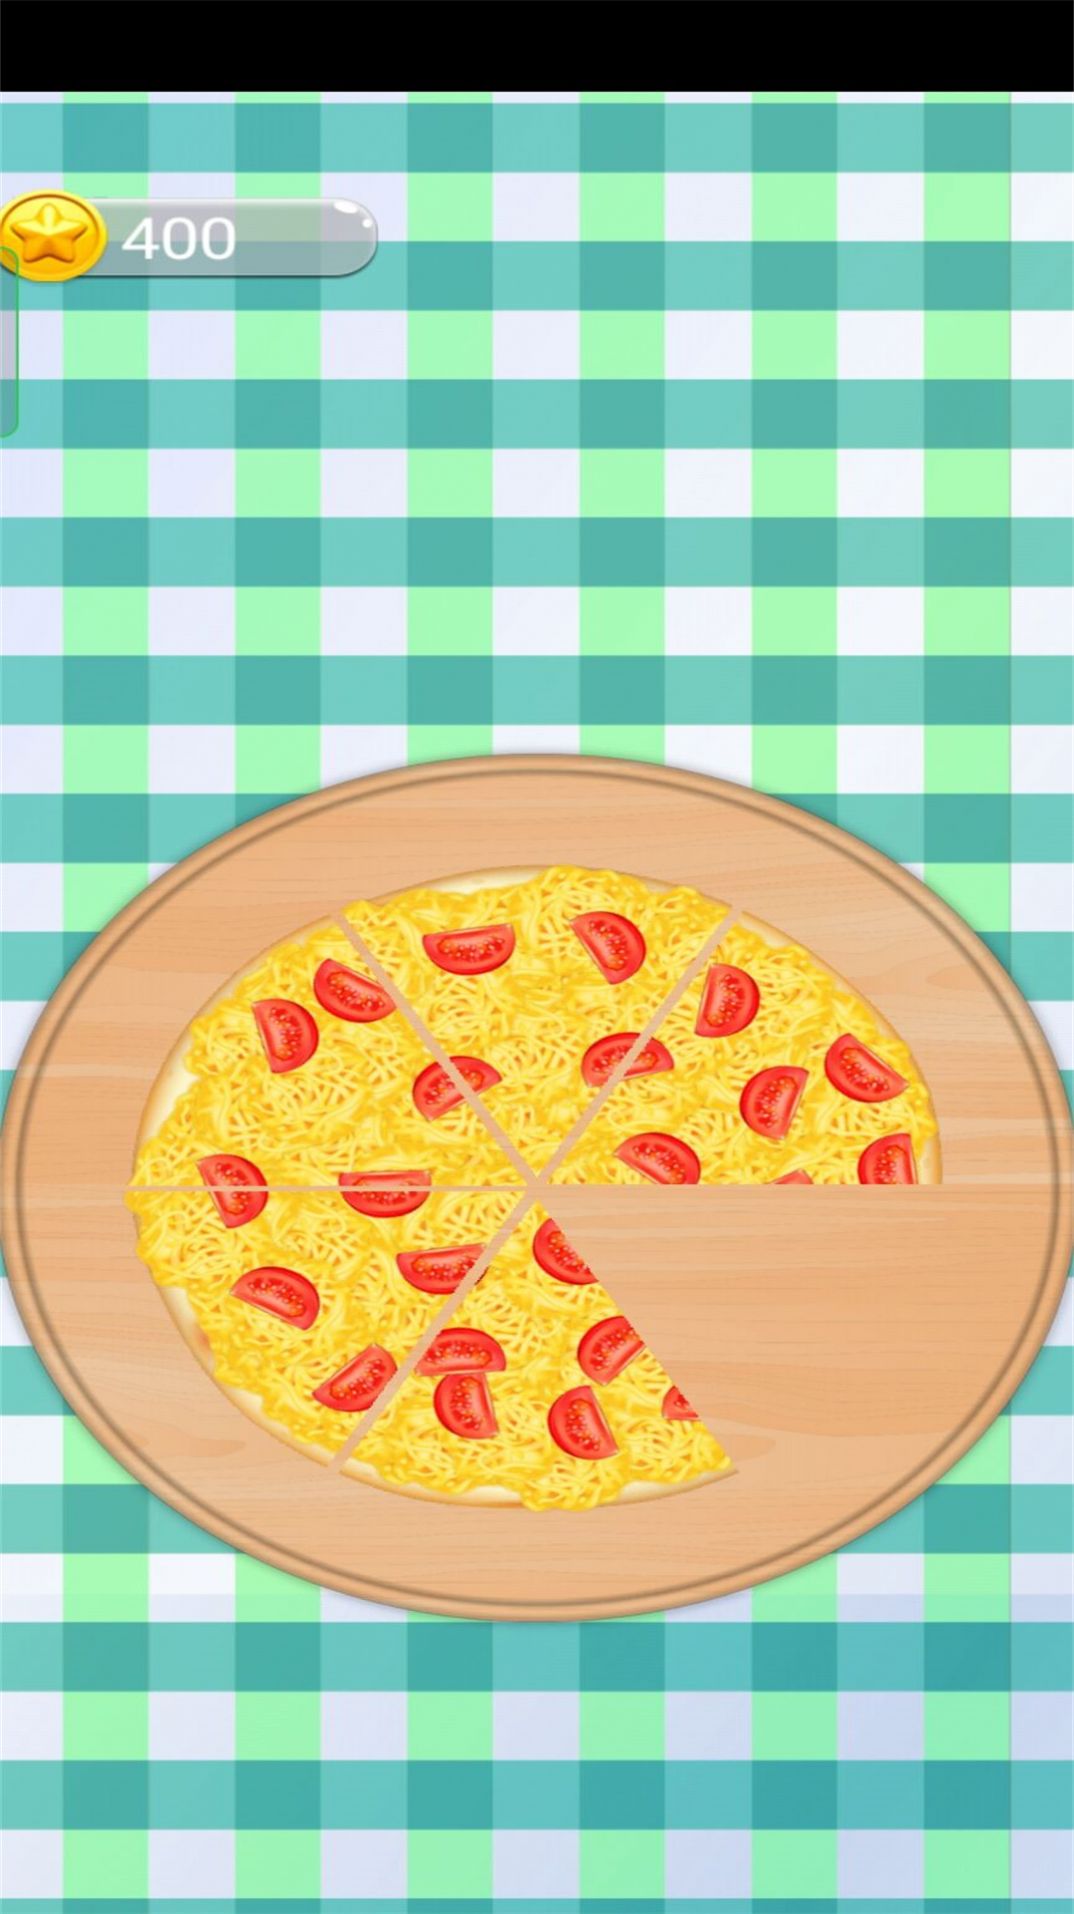 寻找美味披萨游戏中文版软件安卓免费版下载-寻找美味披萨游戏中文版安卓高级版下载